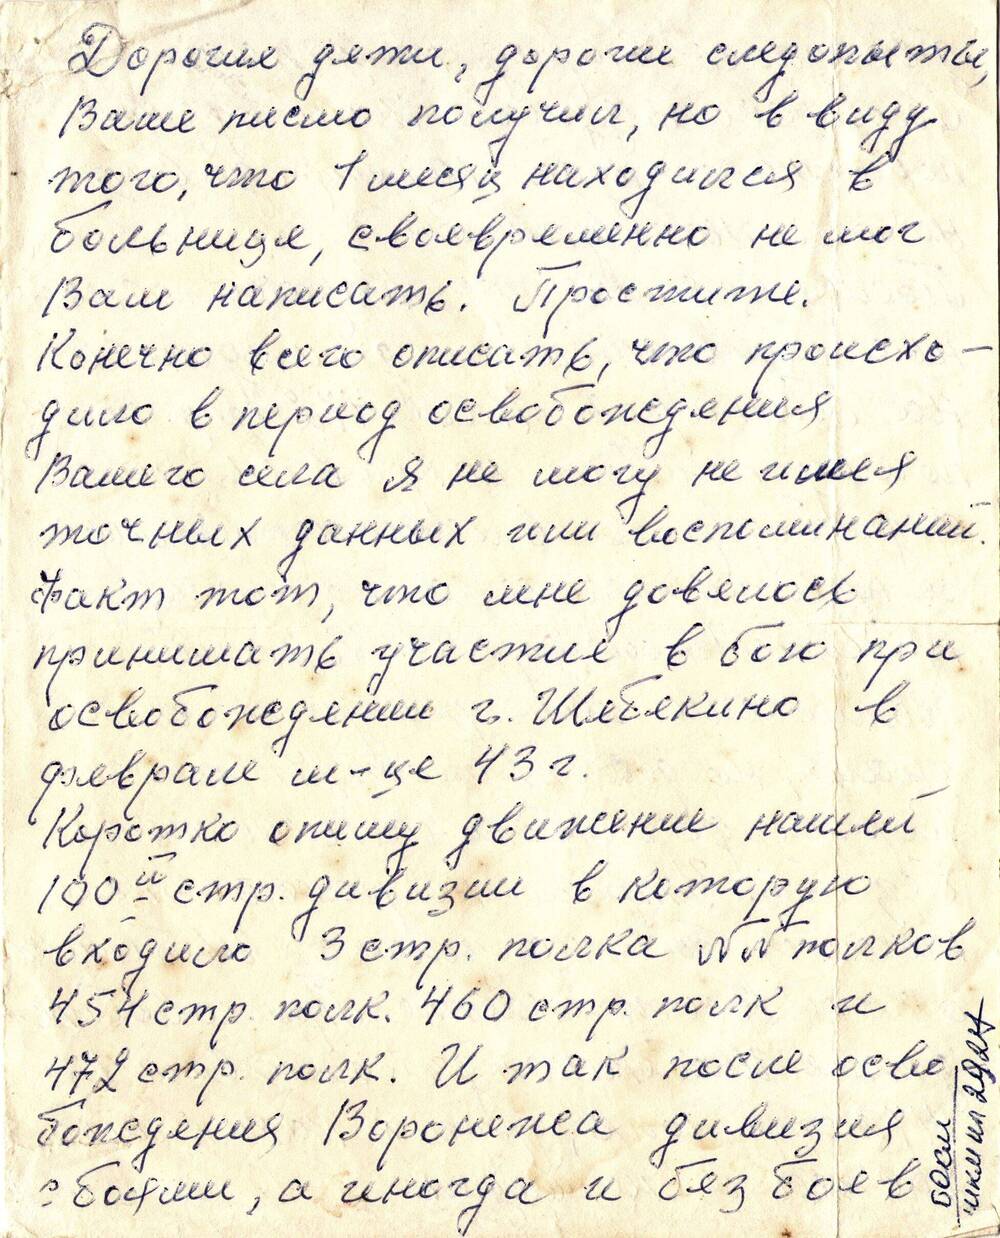 Письмо-воспоминание ветерана 100 стрелковой дивизии Коршунова А.Т.